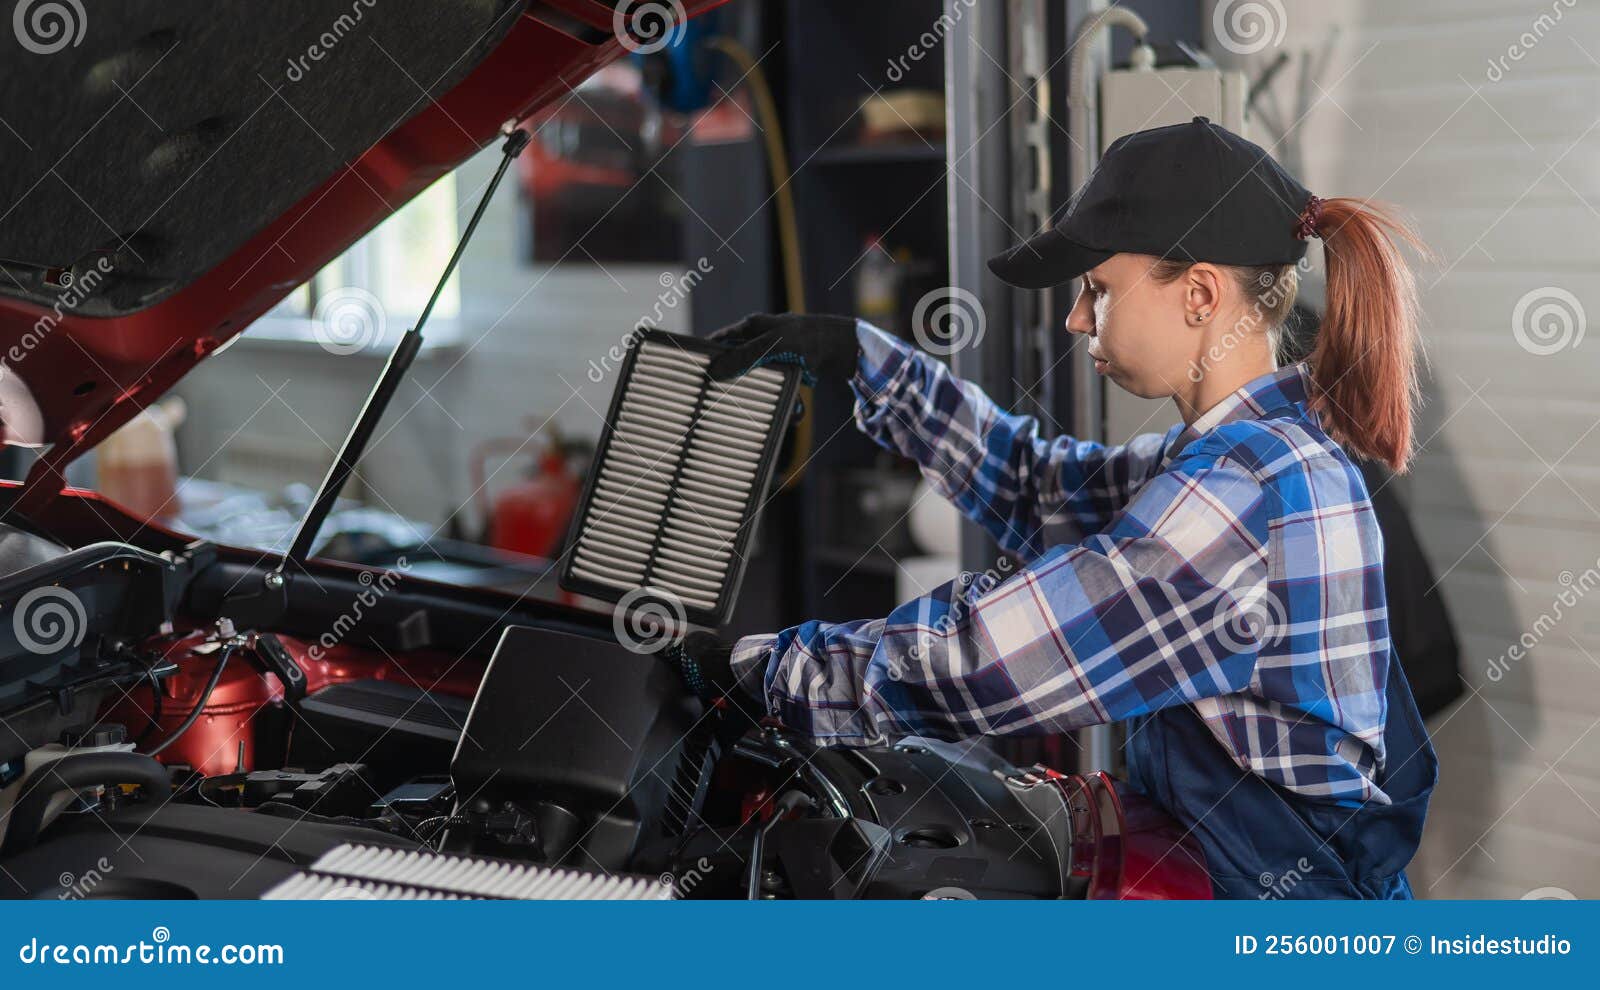 Kaukasische Kfz-Mechanikerin Verändert Den Motorluftfilter Im Auto.  Stockbild - Bild von wartung, kaukasisch: 256001007